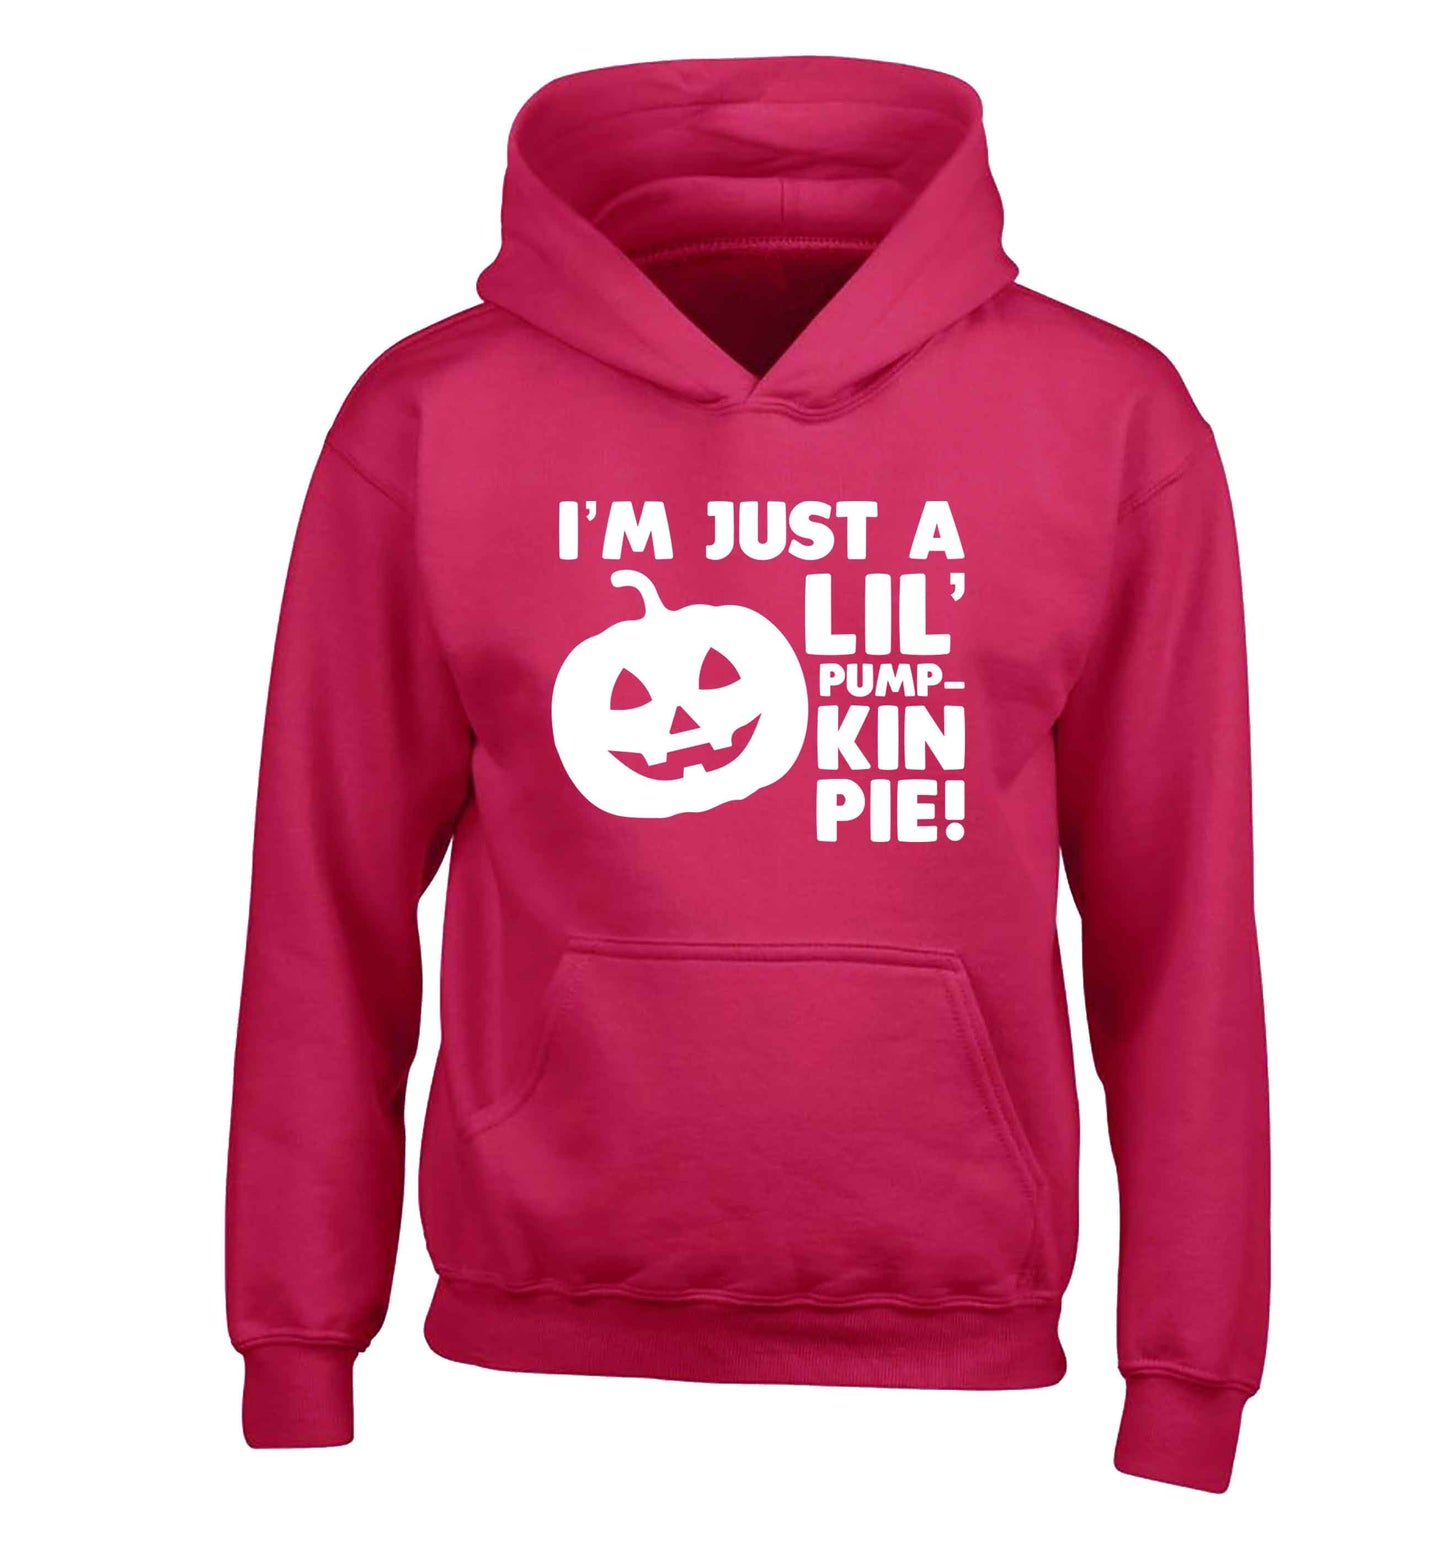 I'm just a lil' pumpkin pie children's pink hoodie 12-13 Years